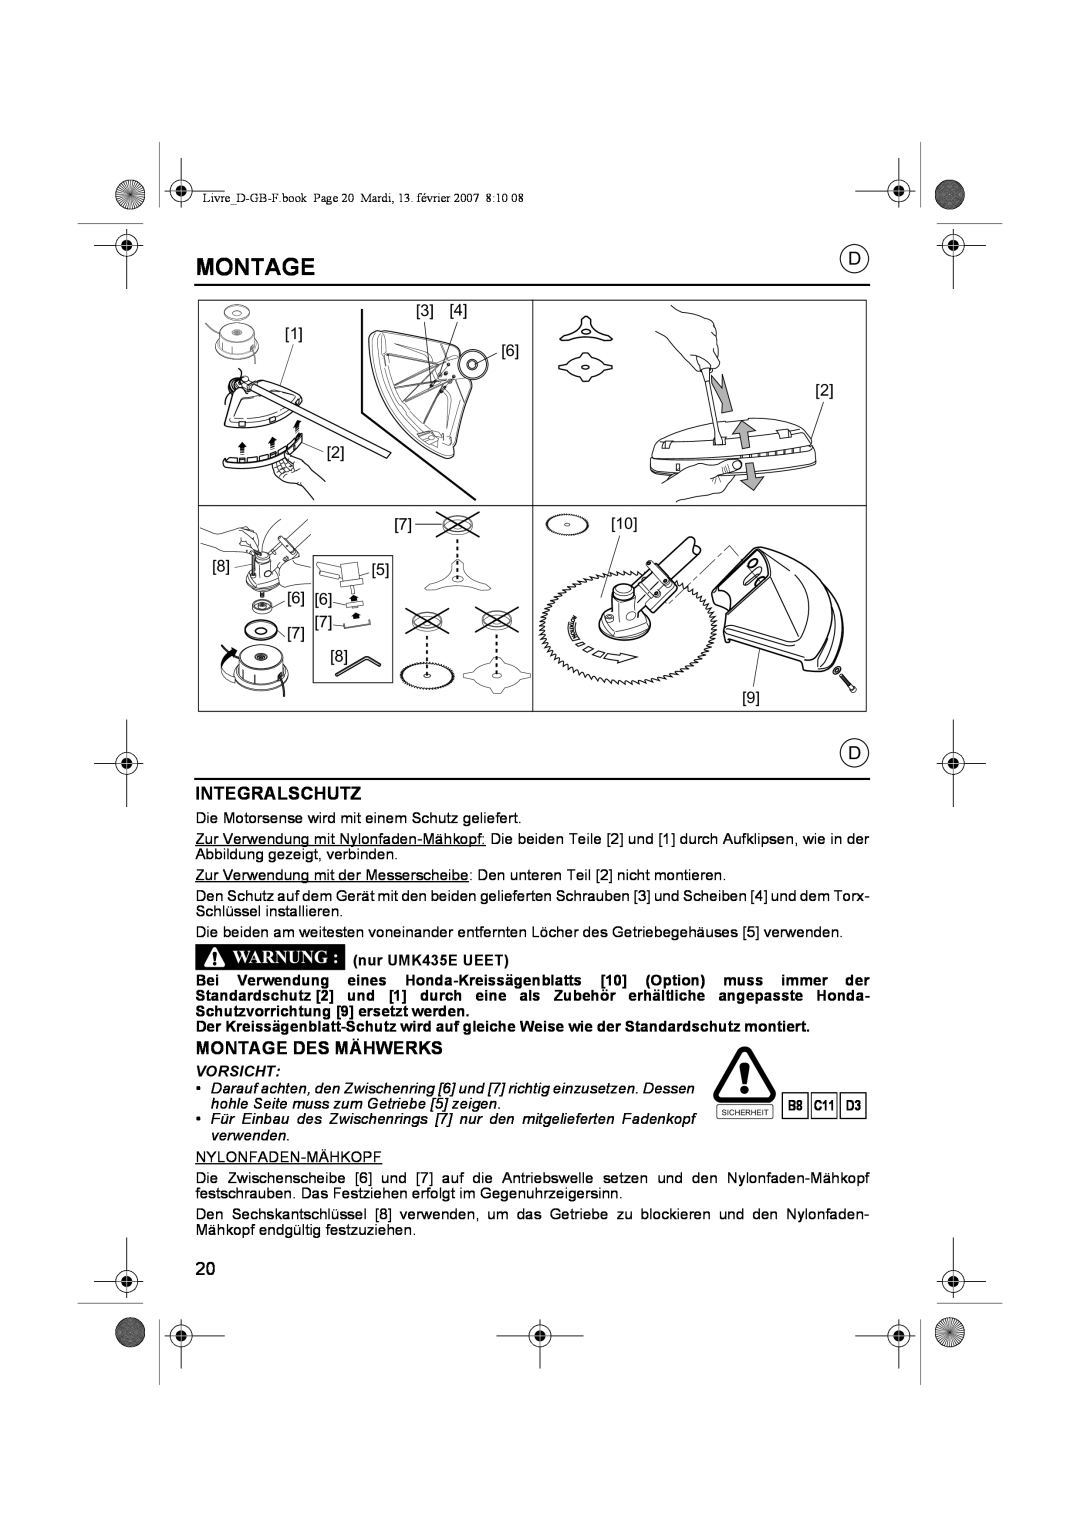 Honda Power Equipment owner manual Integralschutz, Montage Des Mähwerks, nur UMK435E UEET, Vorsicht, B8 C11 D3 